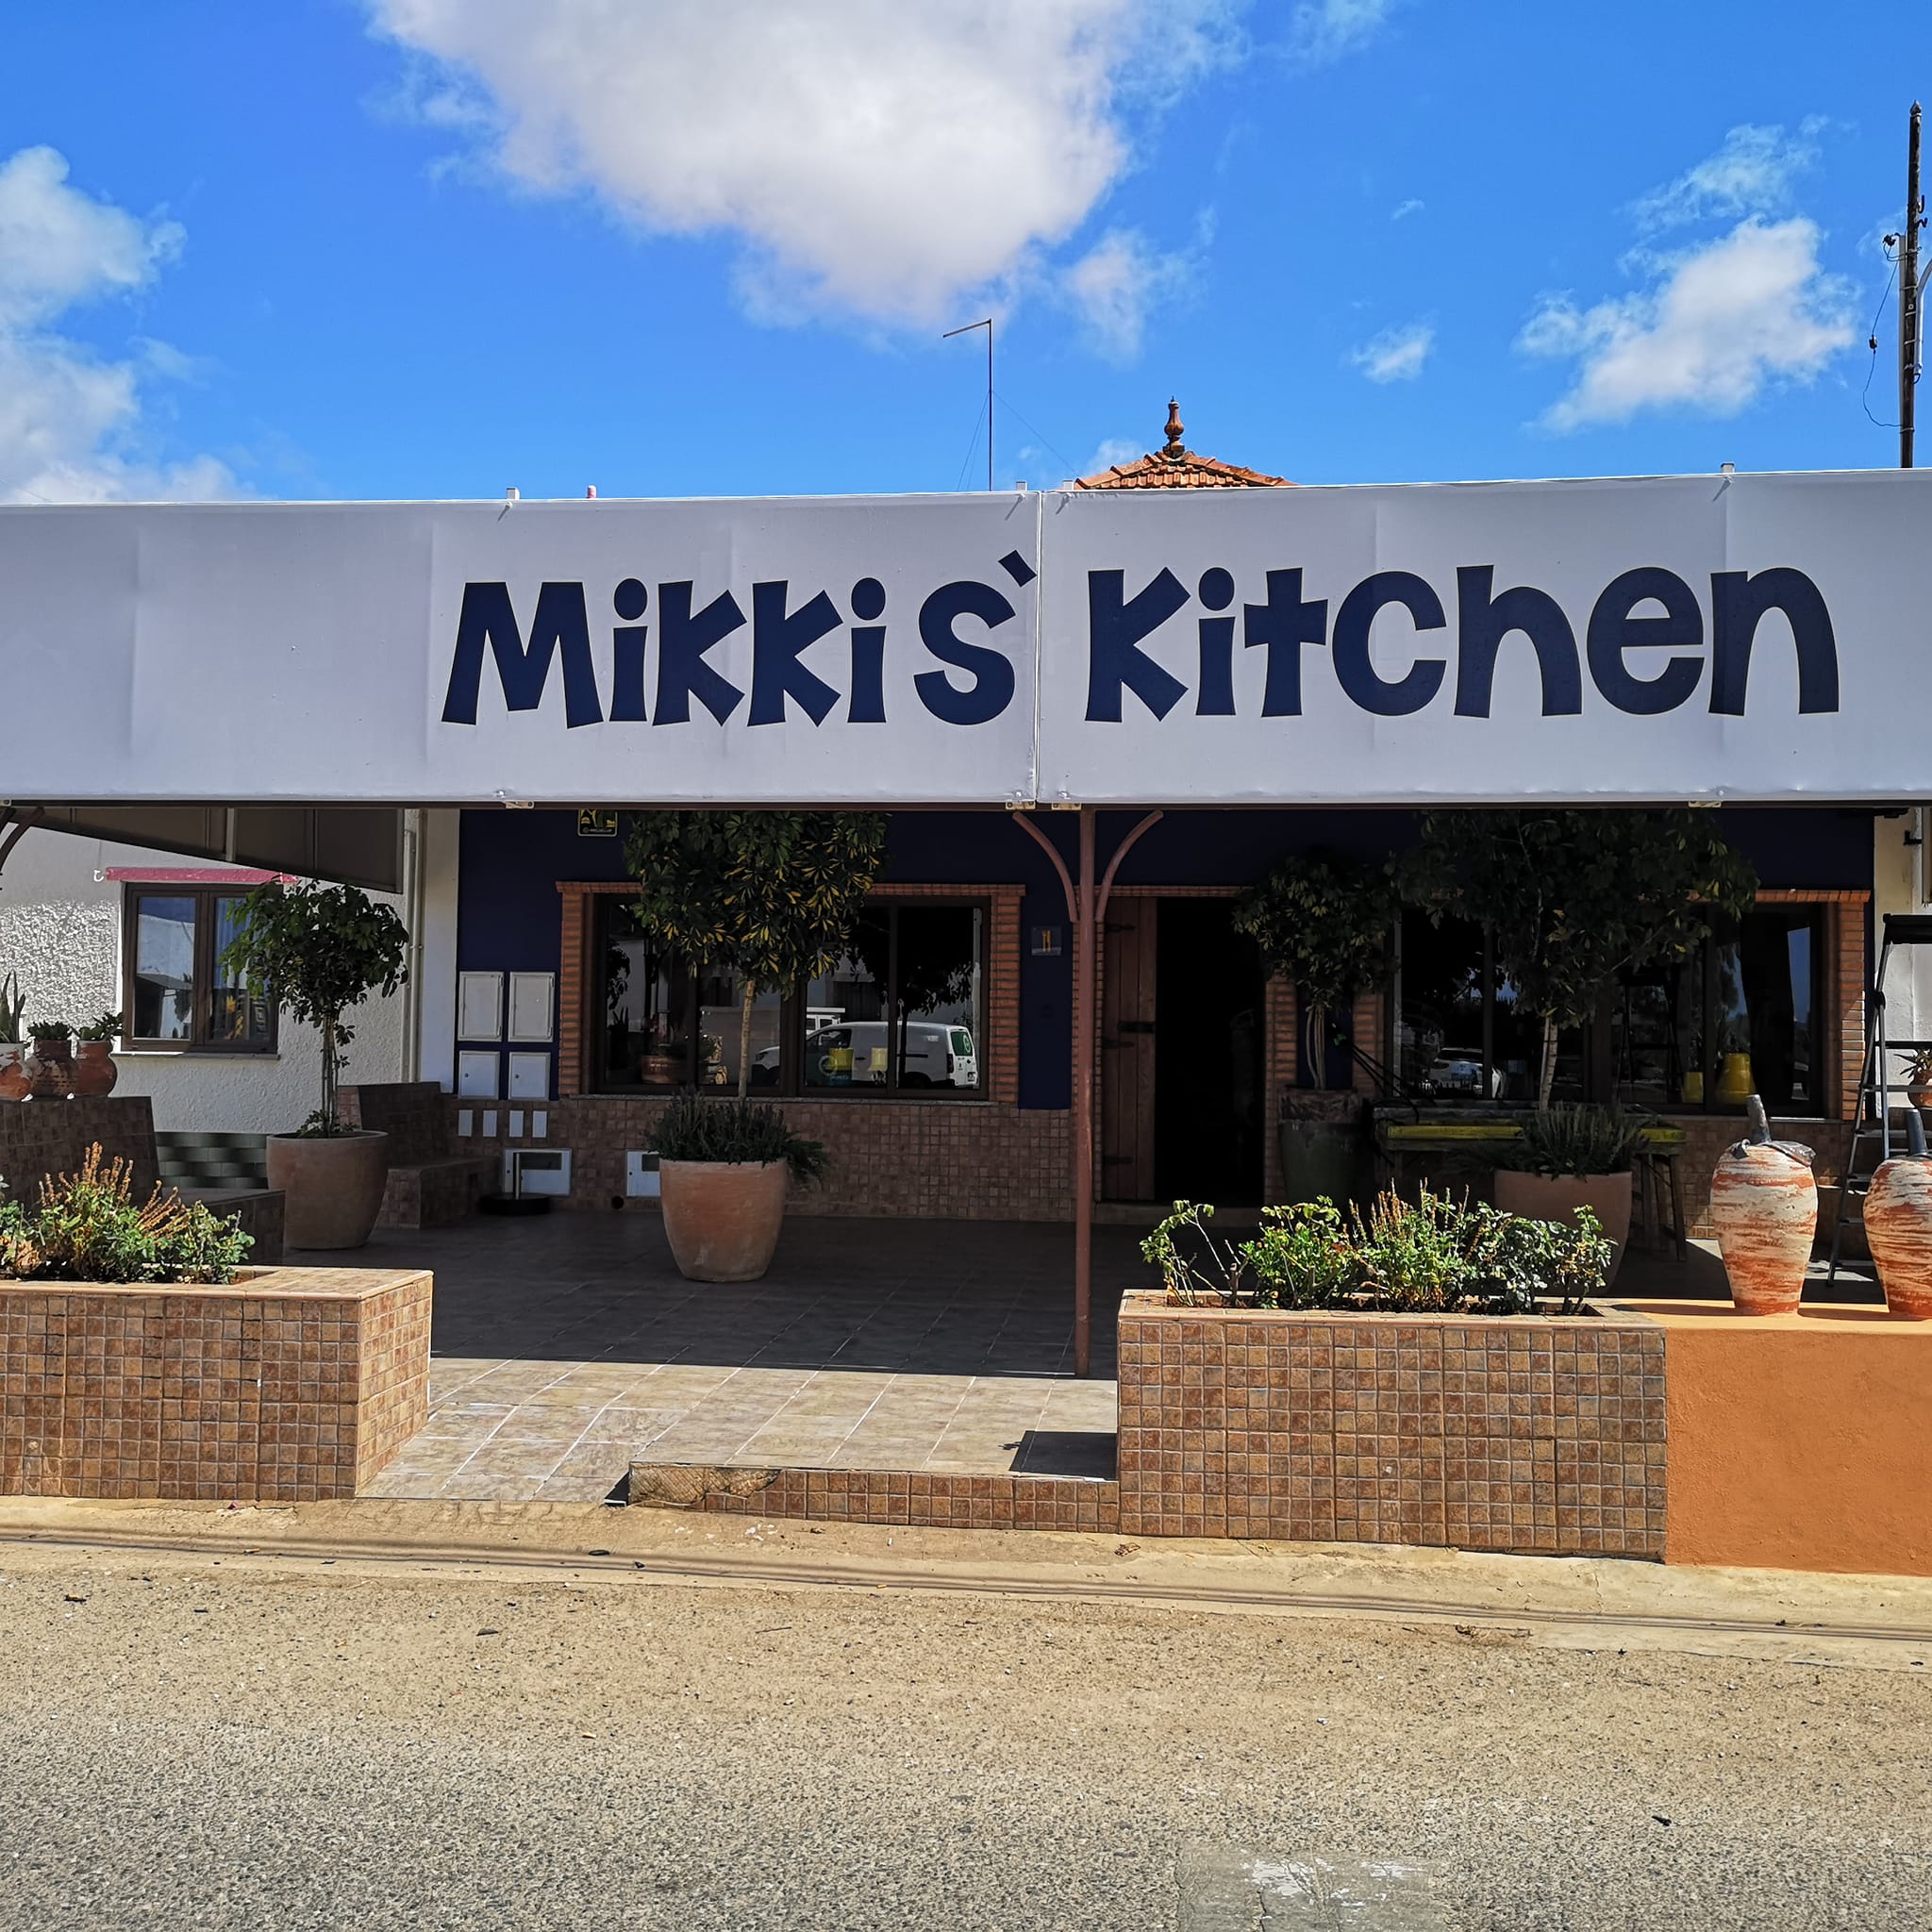 Mikkis Kitchen